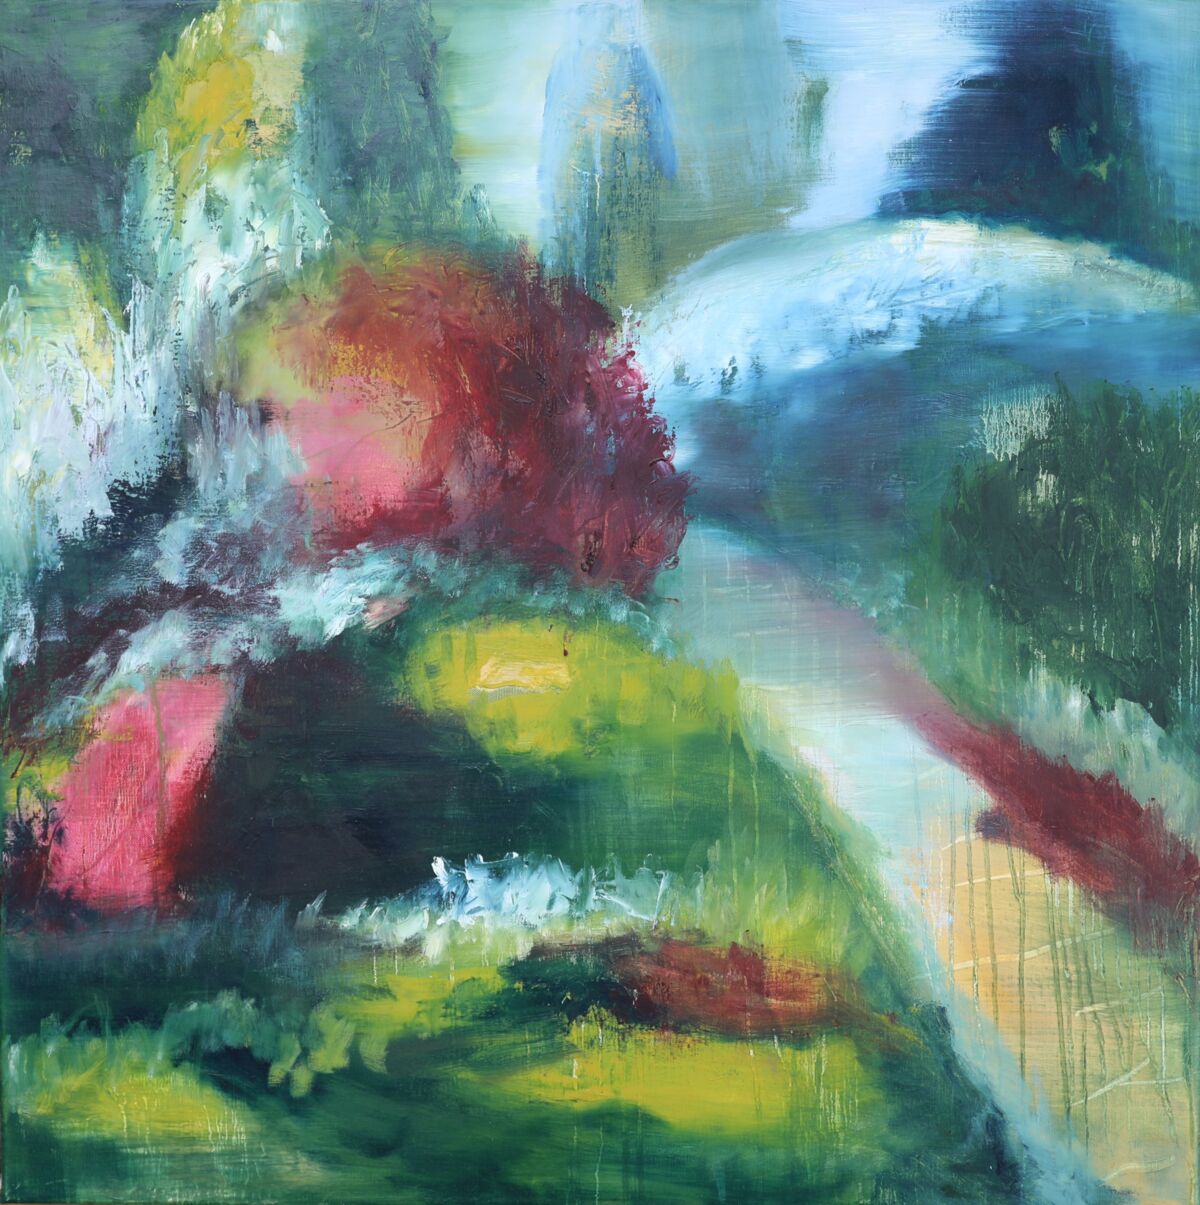 Das Bild "Im Staudengarten" ist in Mischtechnik mit kräftigen Farben in blauen, grünen und Magentatönen gemalt.